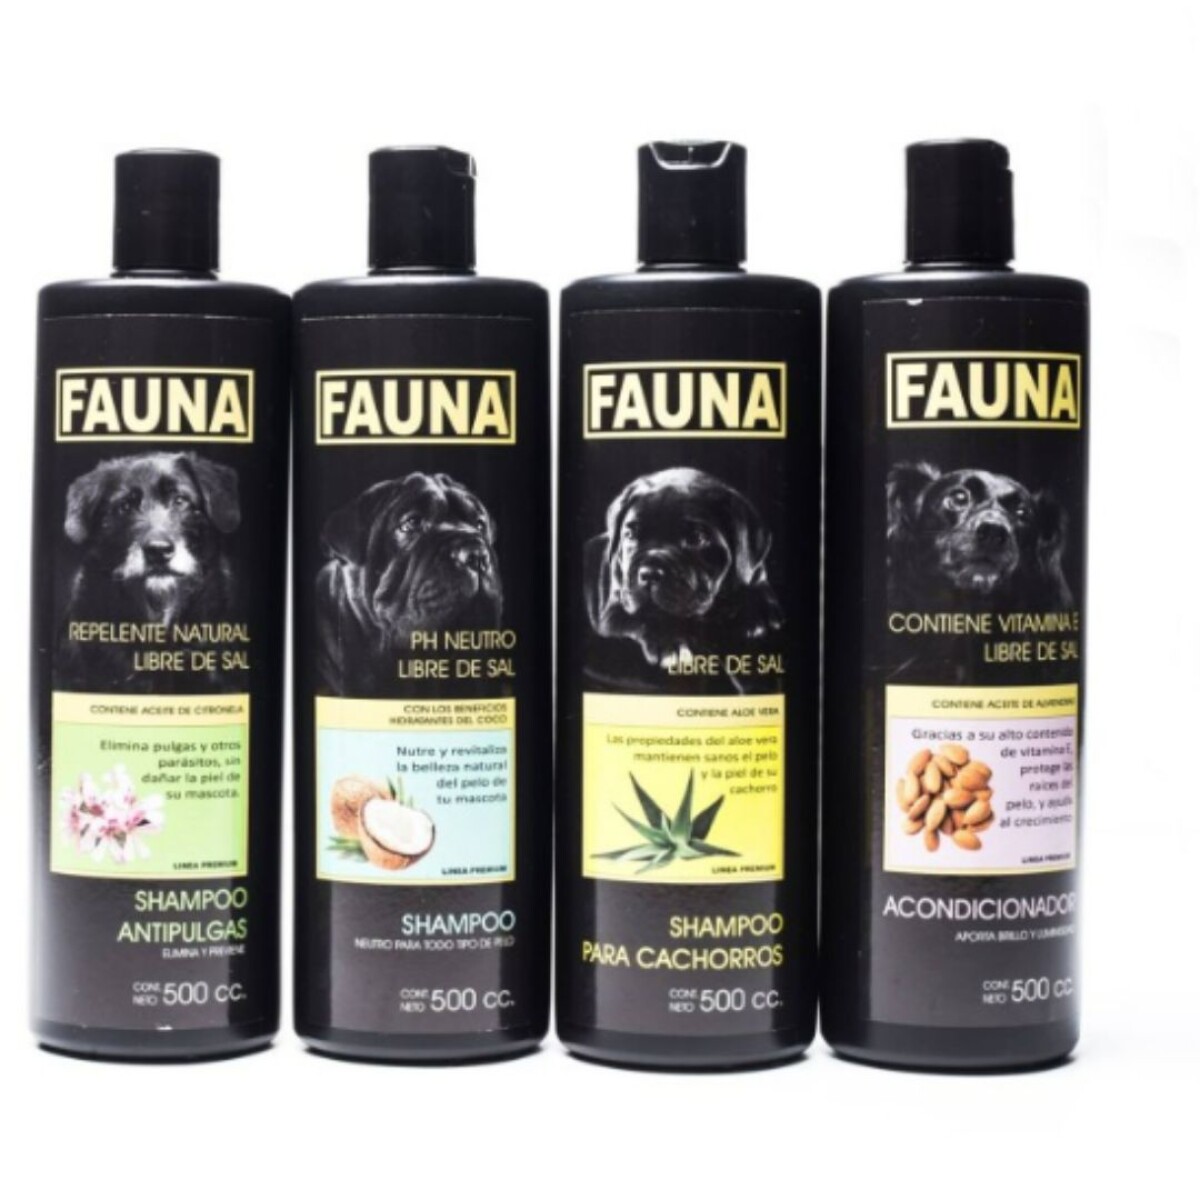 Shampoo Fauna 500 Cc 